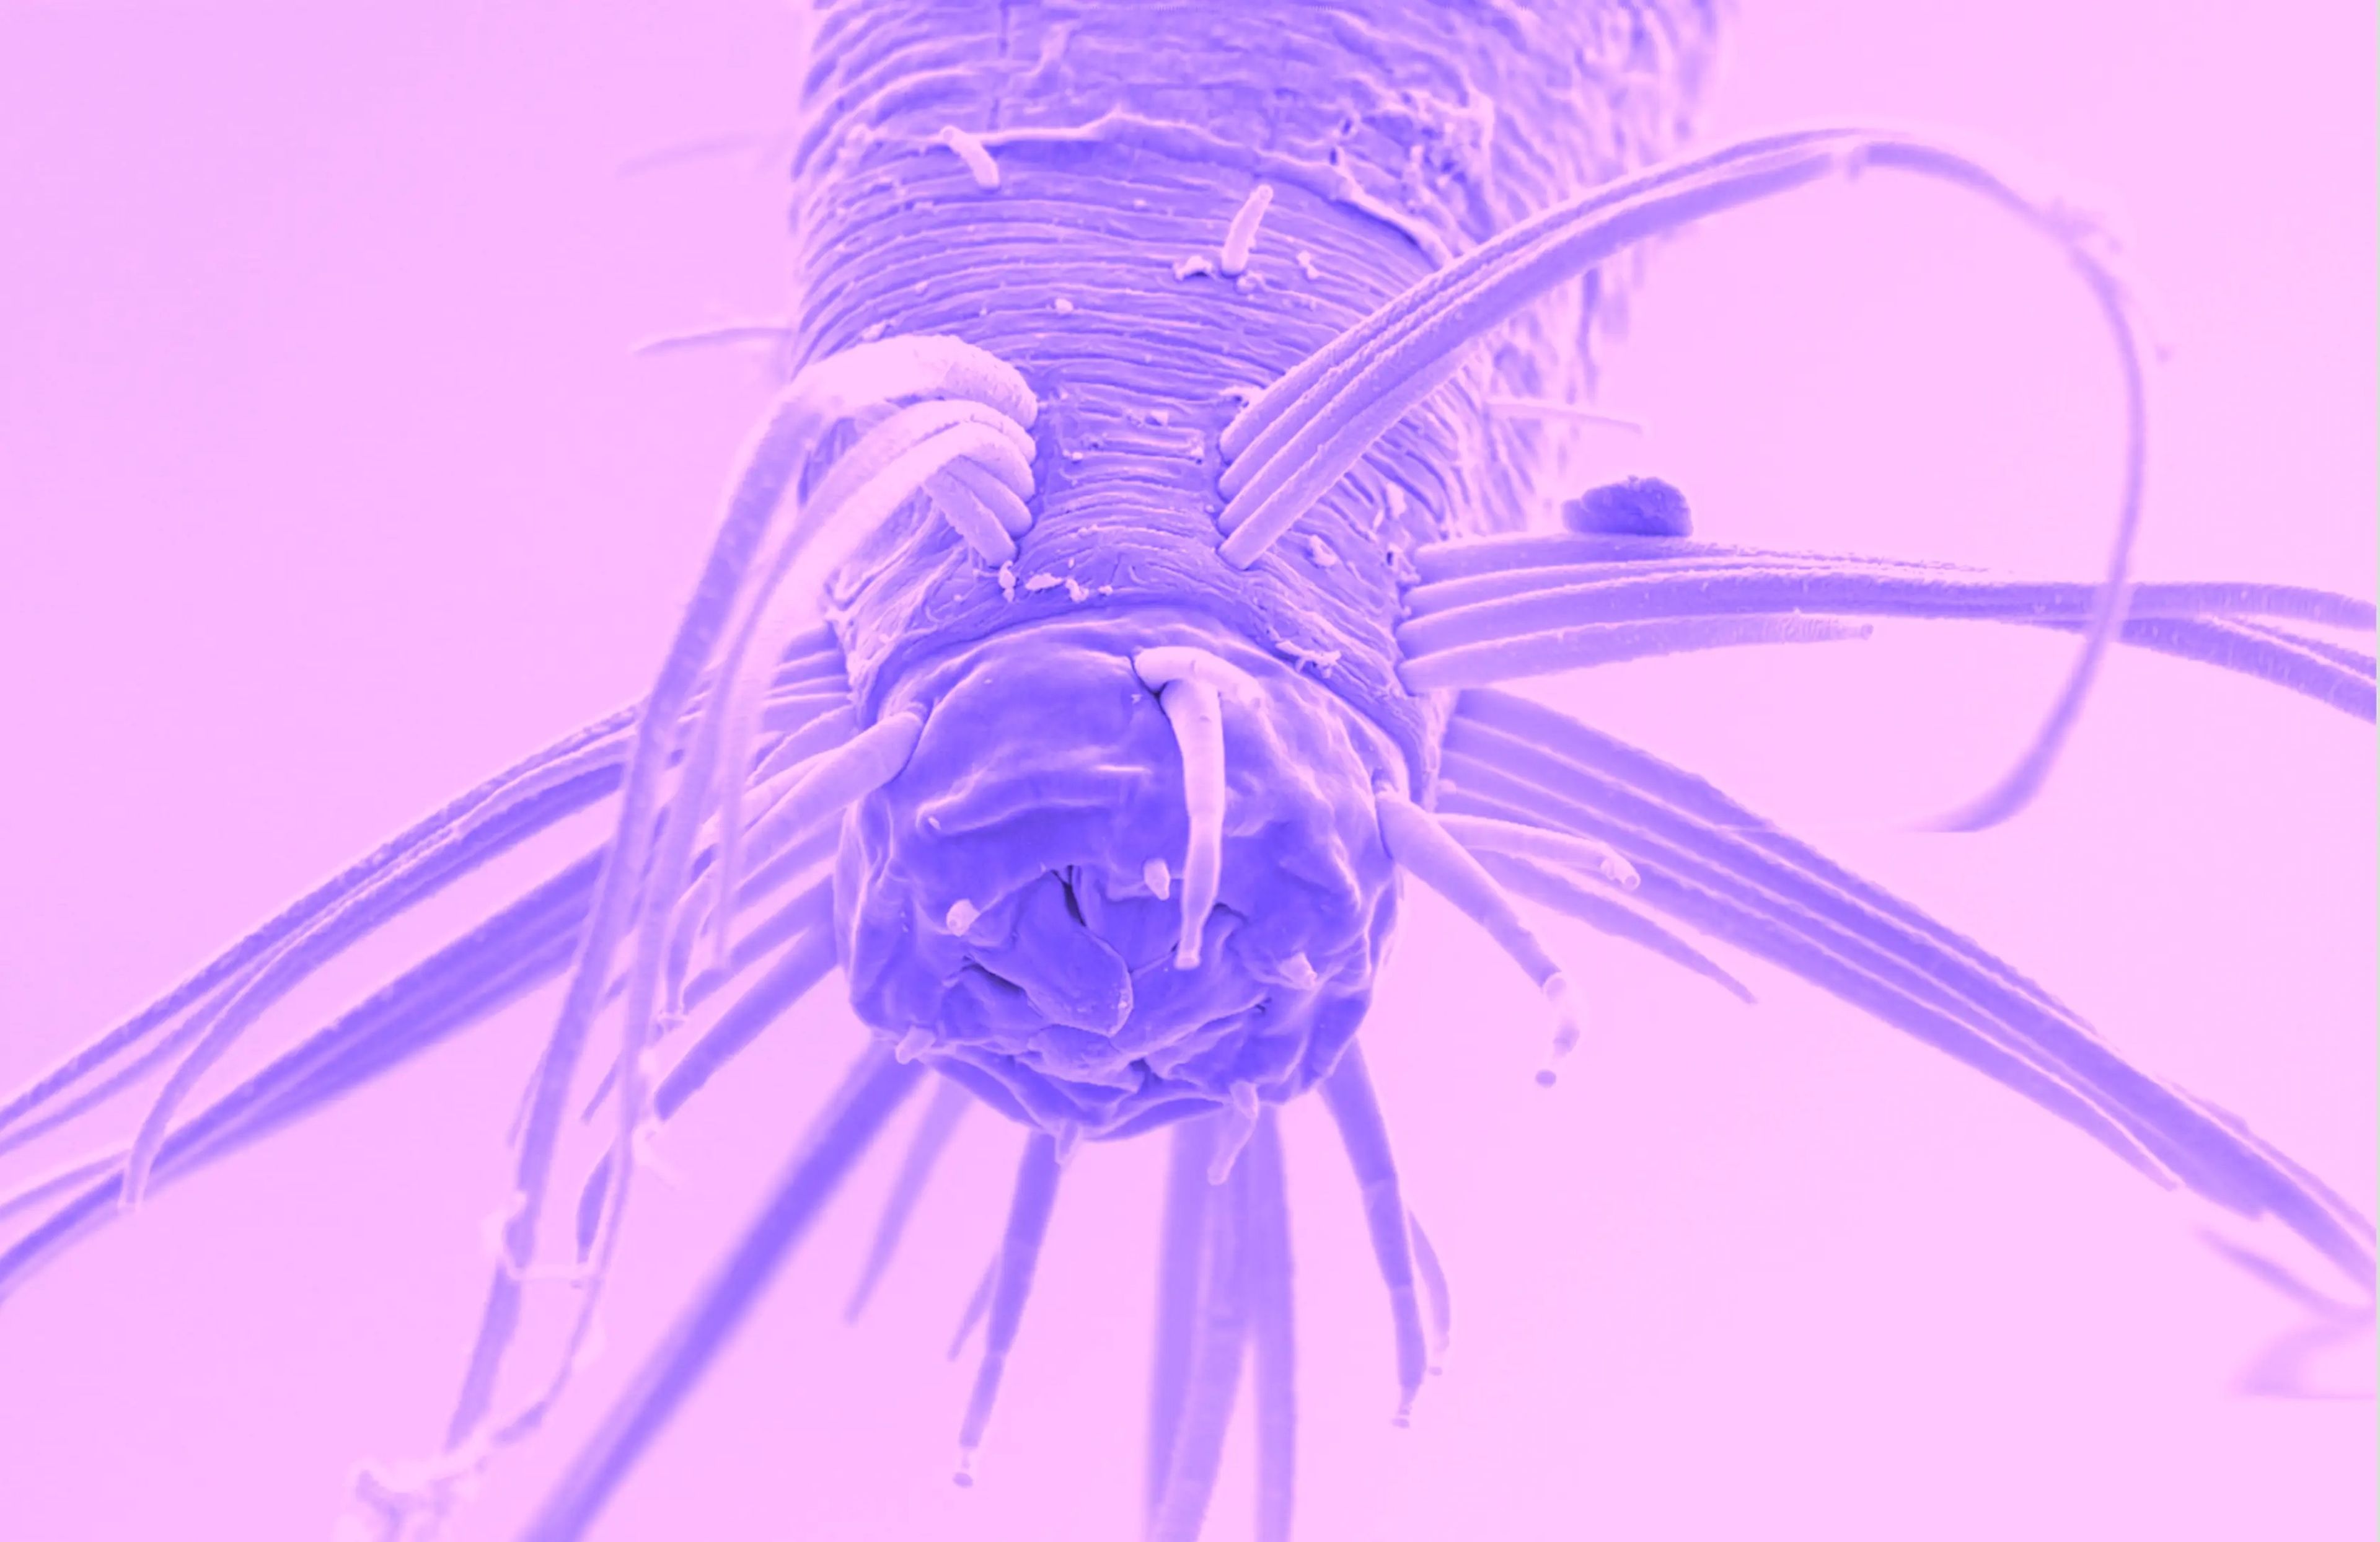 Los nematodos Theristus pueden nadar para cazar presas.